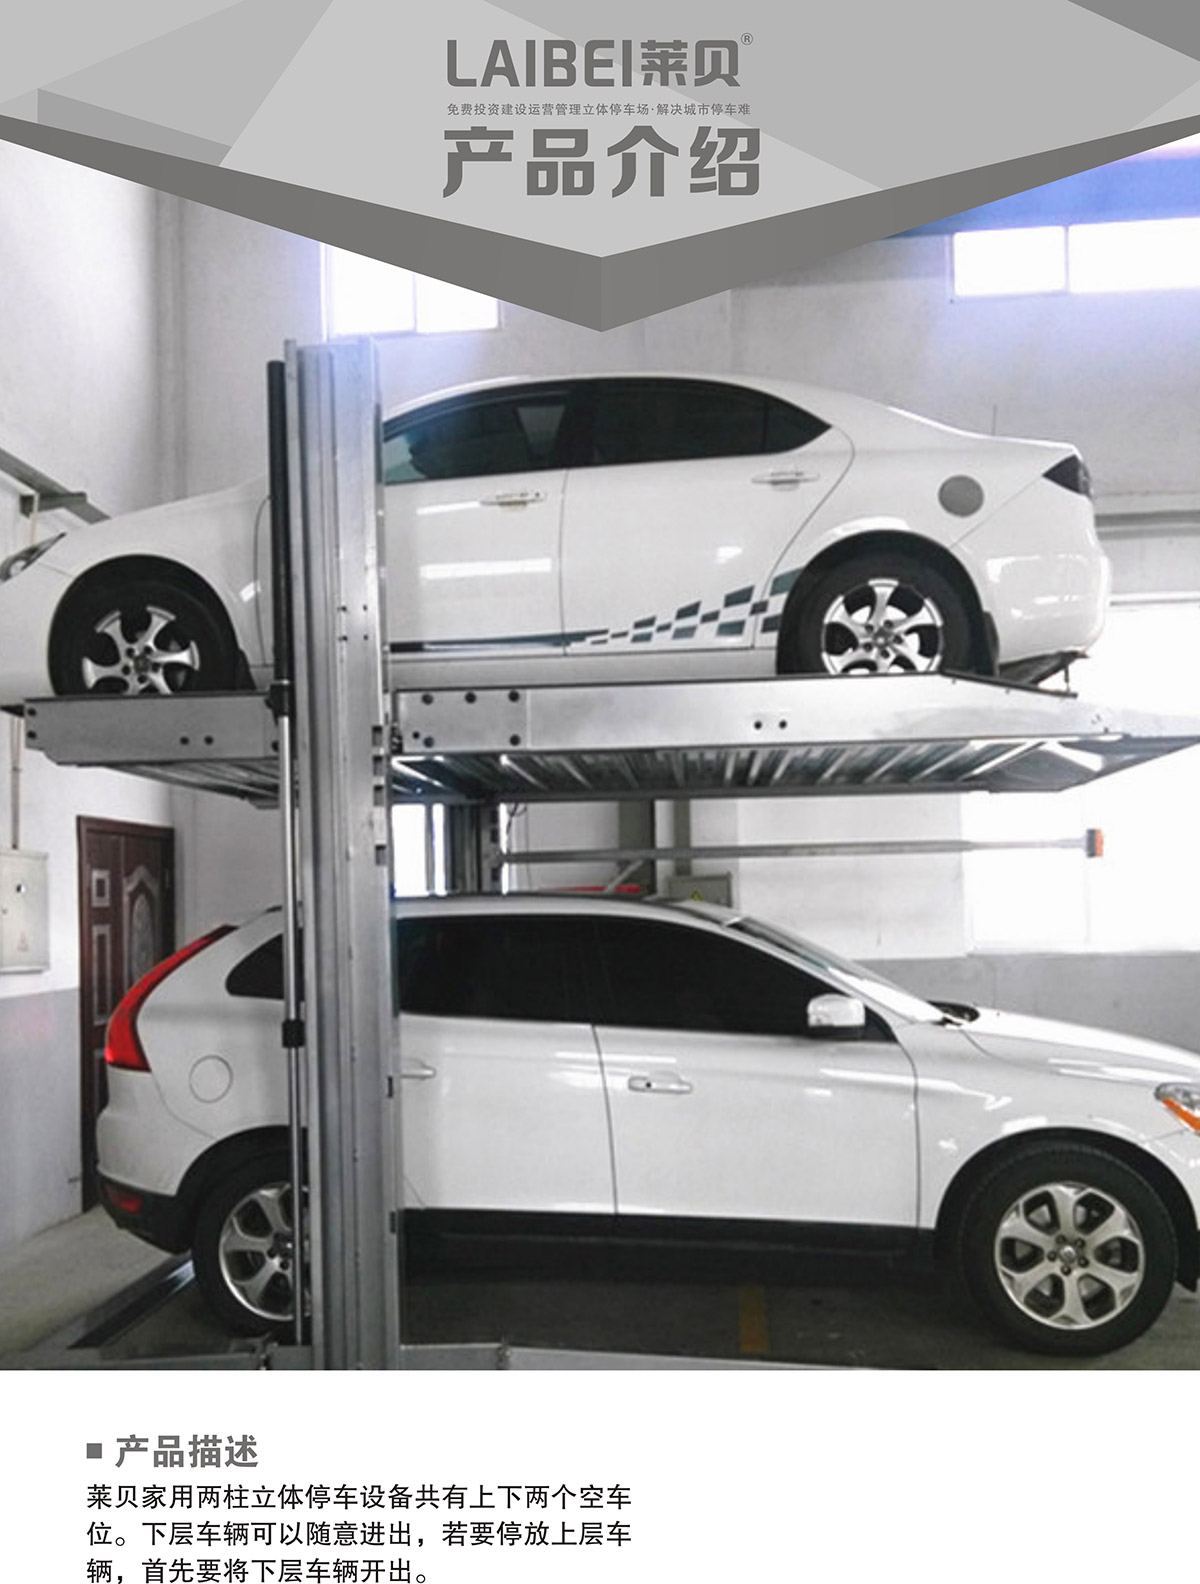 机械立体车库PJS两柱简易升降立体停车产品介绍.jpg